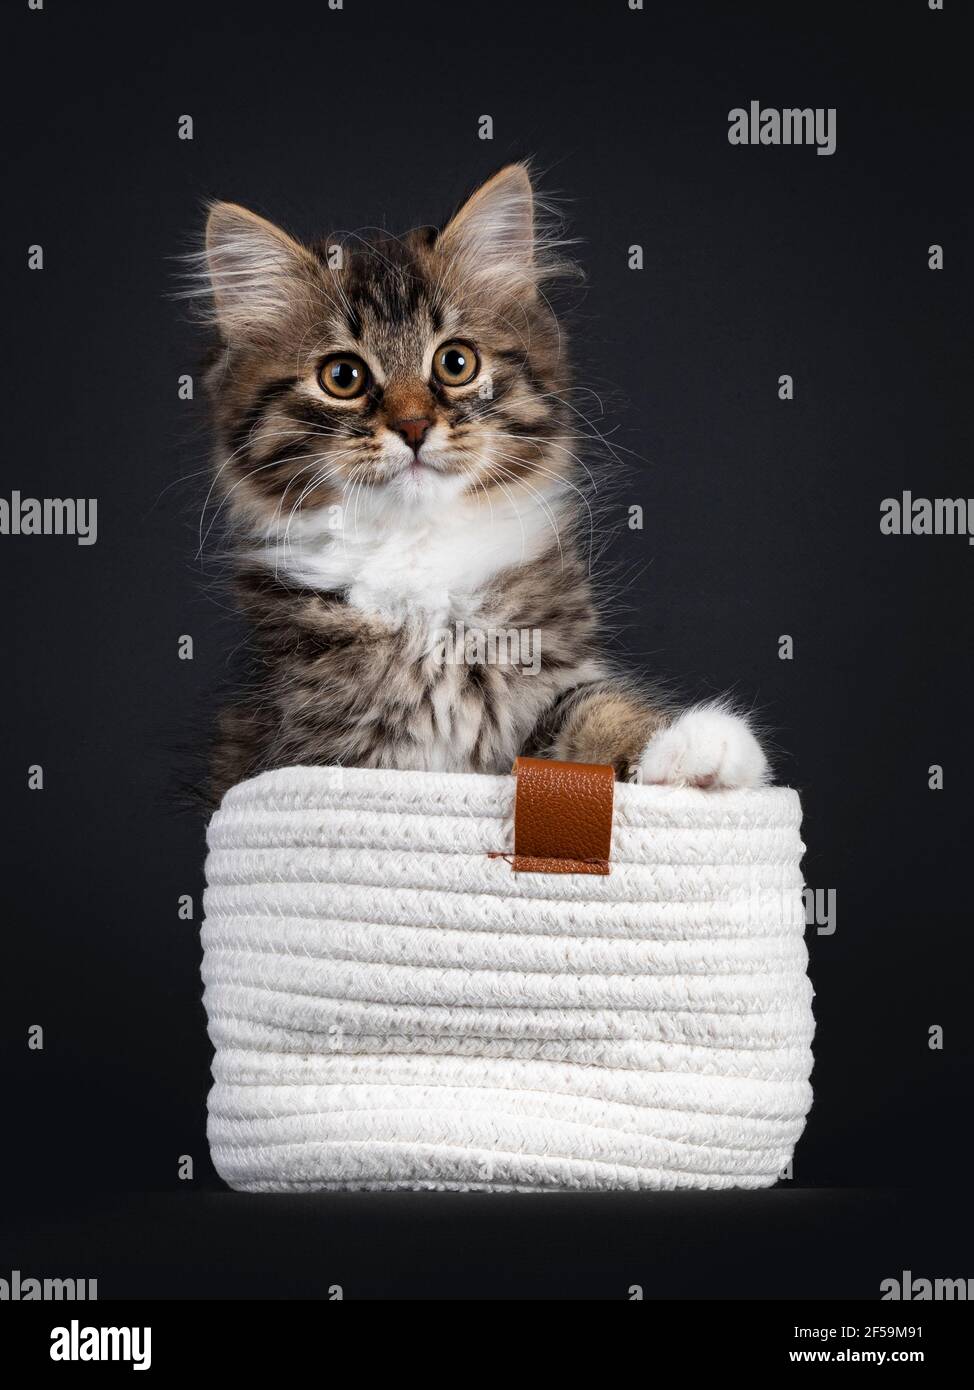 Adorable tabby noir avec chaton de chat de Sibérie blanc, assis face à l'avant dans le panier tricoté blanc. Regarder directement vers l'appareil photo. Isolé sur fond noir Banque D'Images